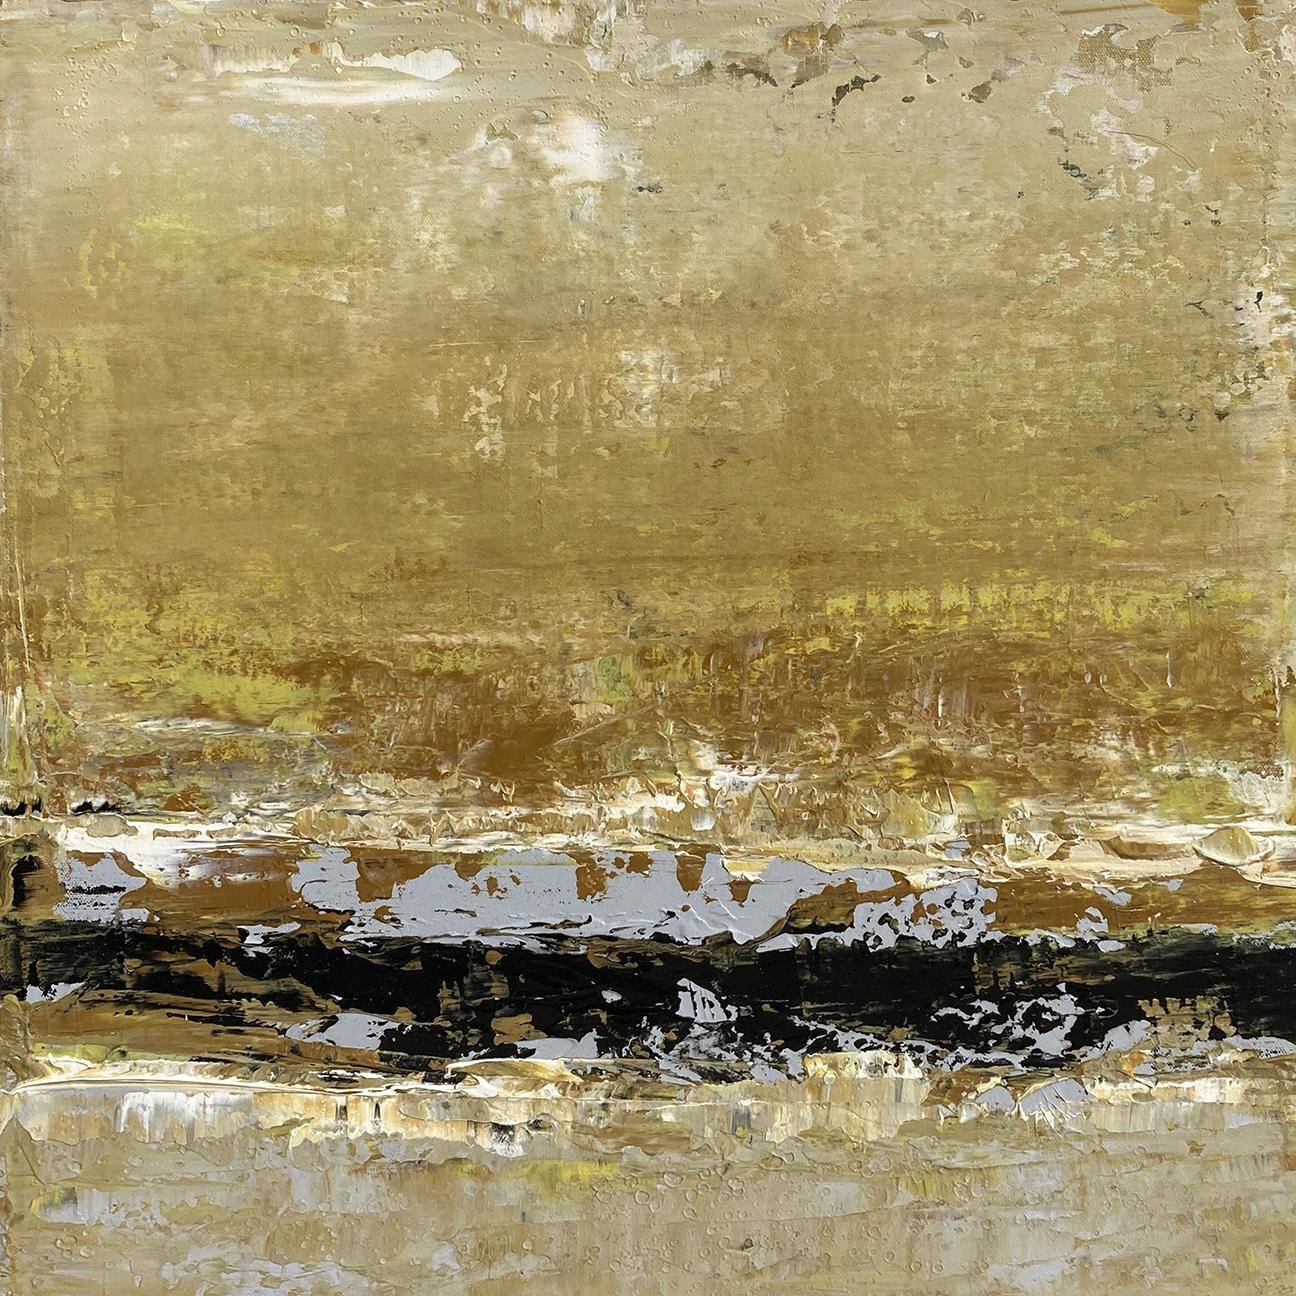 Landscape Painting Brad Robertson - Sans titre, n° 2 - Peinture de paysage abstrait contemporaine jaune texturé